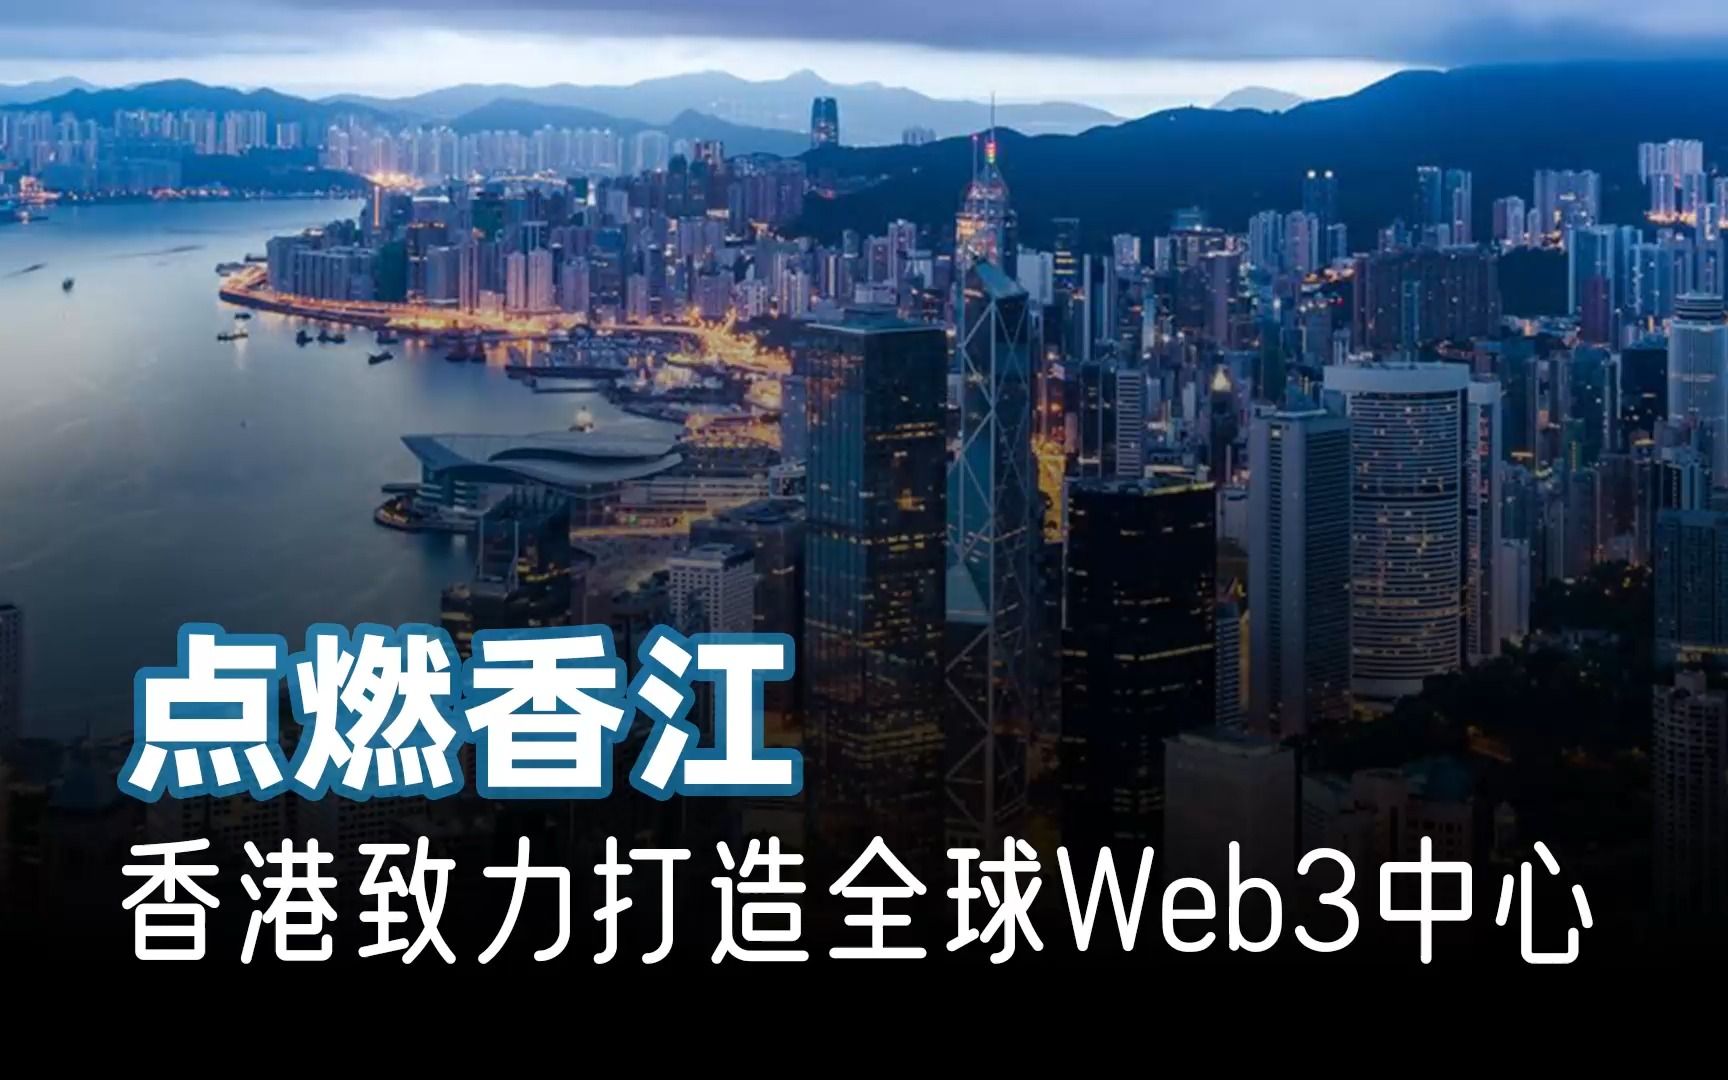 半年内有望吸引超80家加密企业,Allin的香港会成为全球加密中心吗？